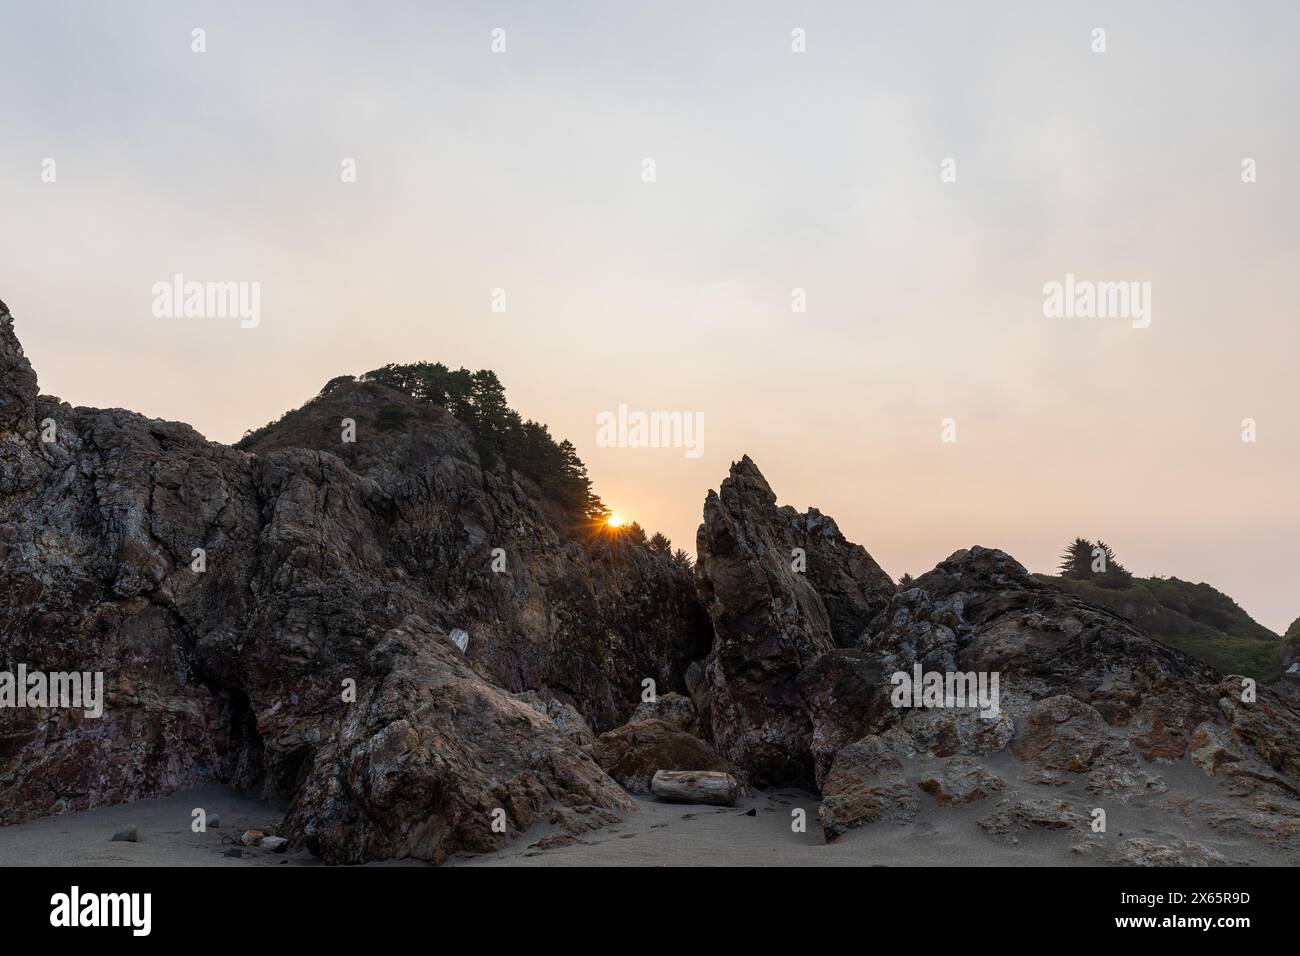 Sun peering over rocks at beach sunrise Stock Photo